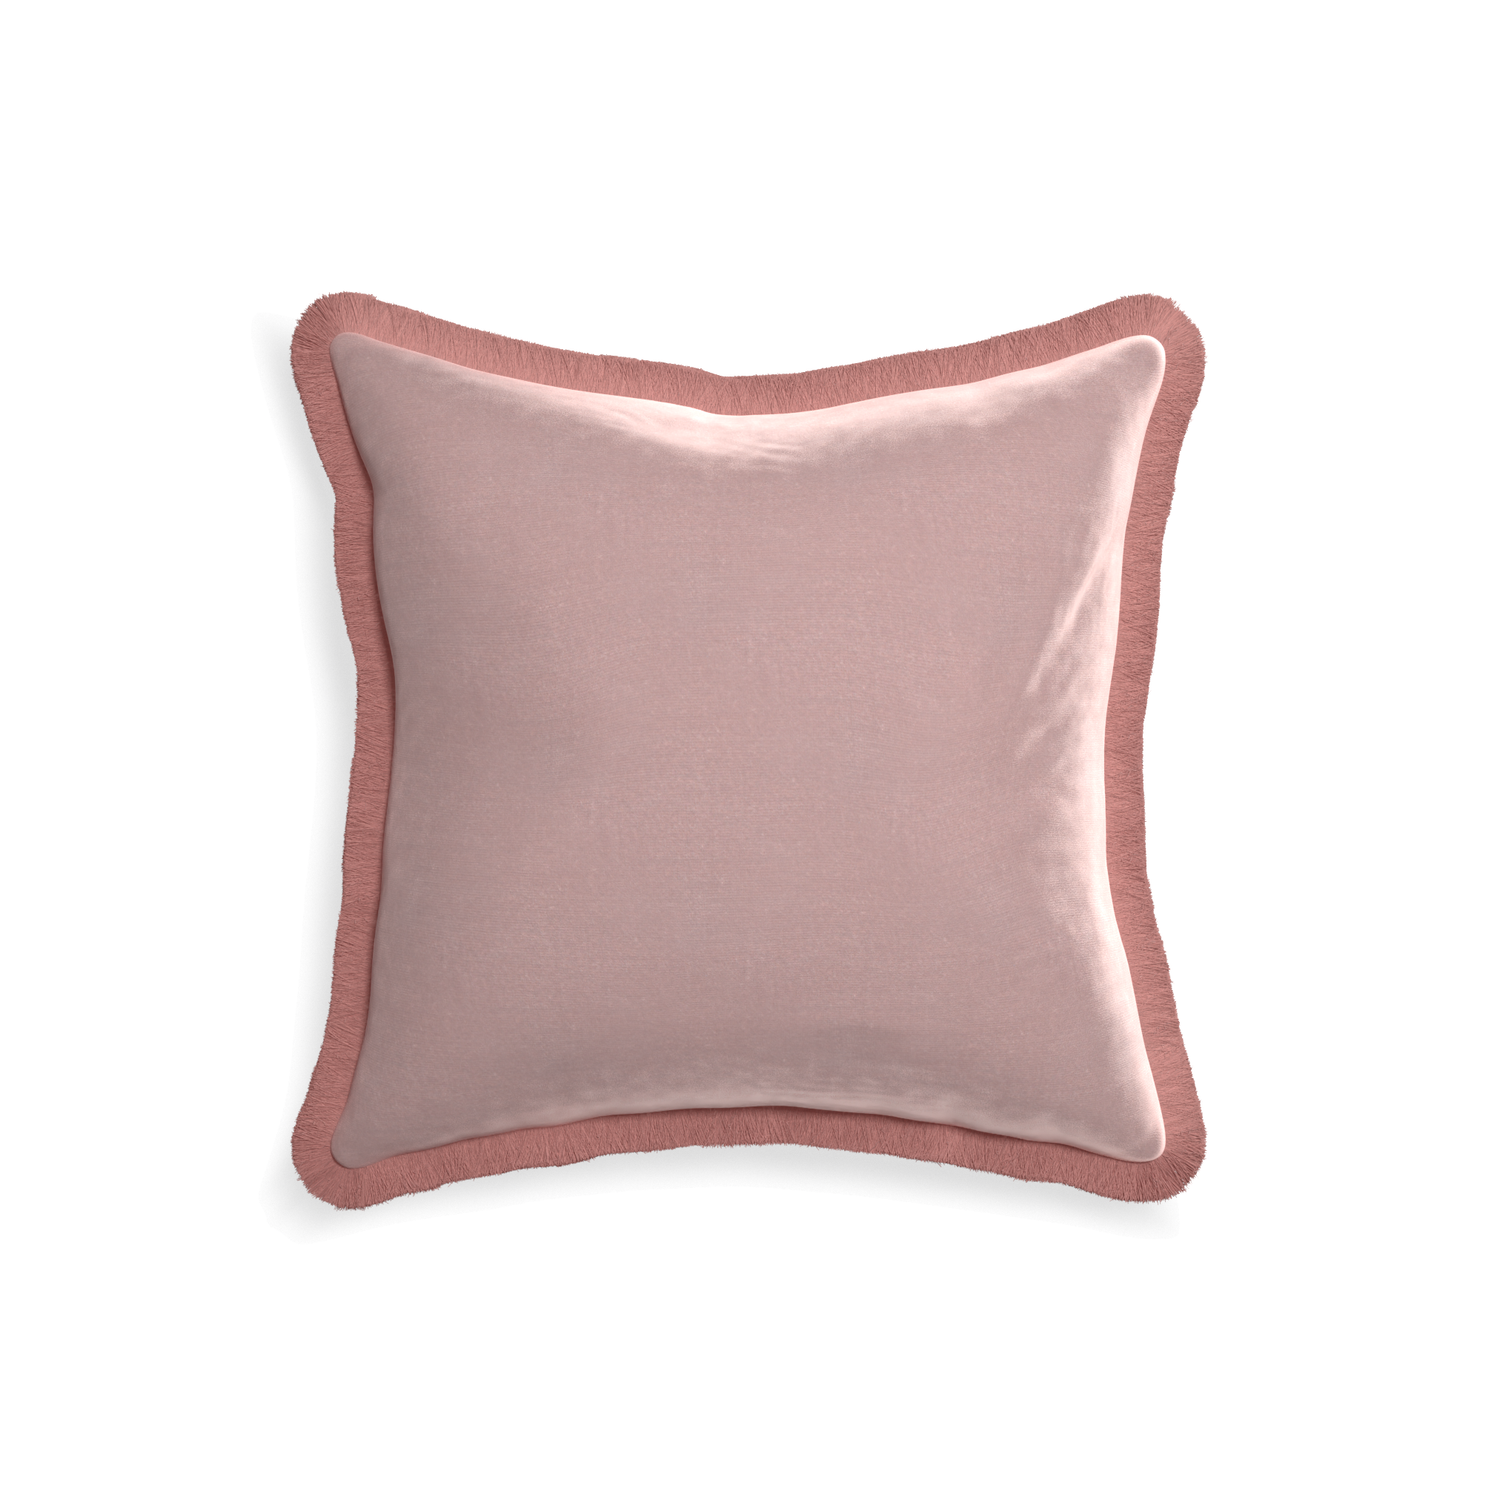 18-square mauve velvet custom pillow with d fringe on white background